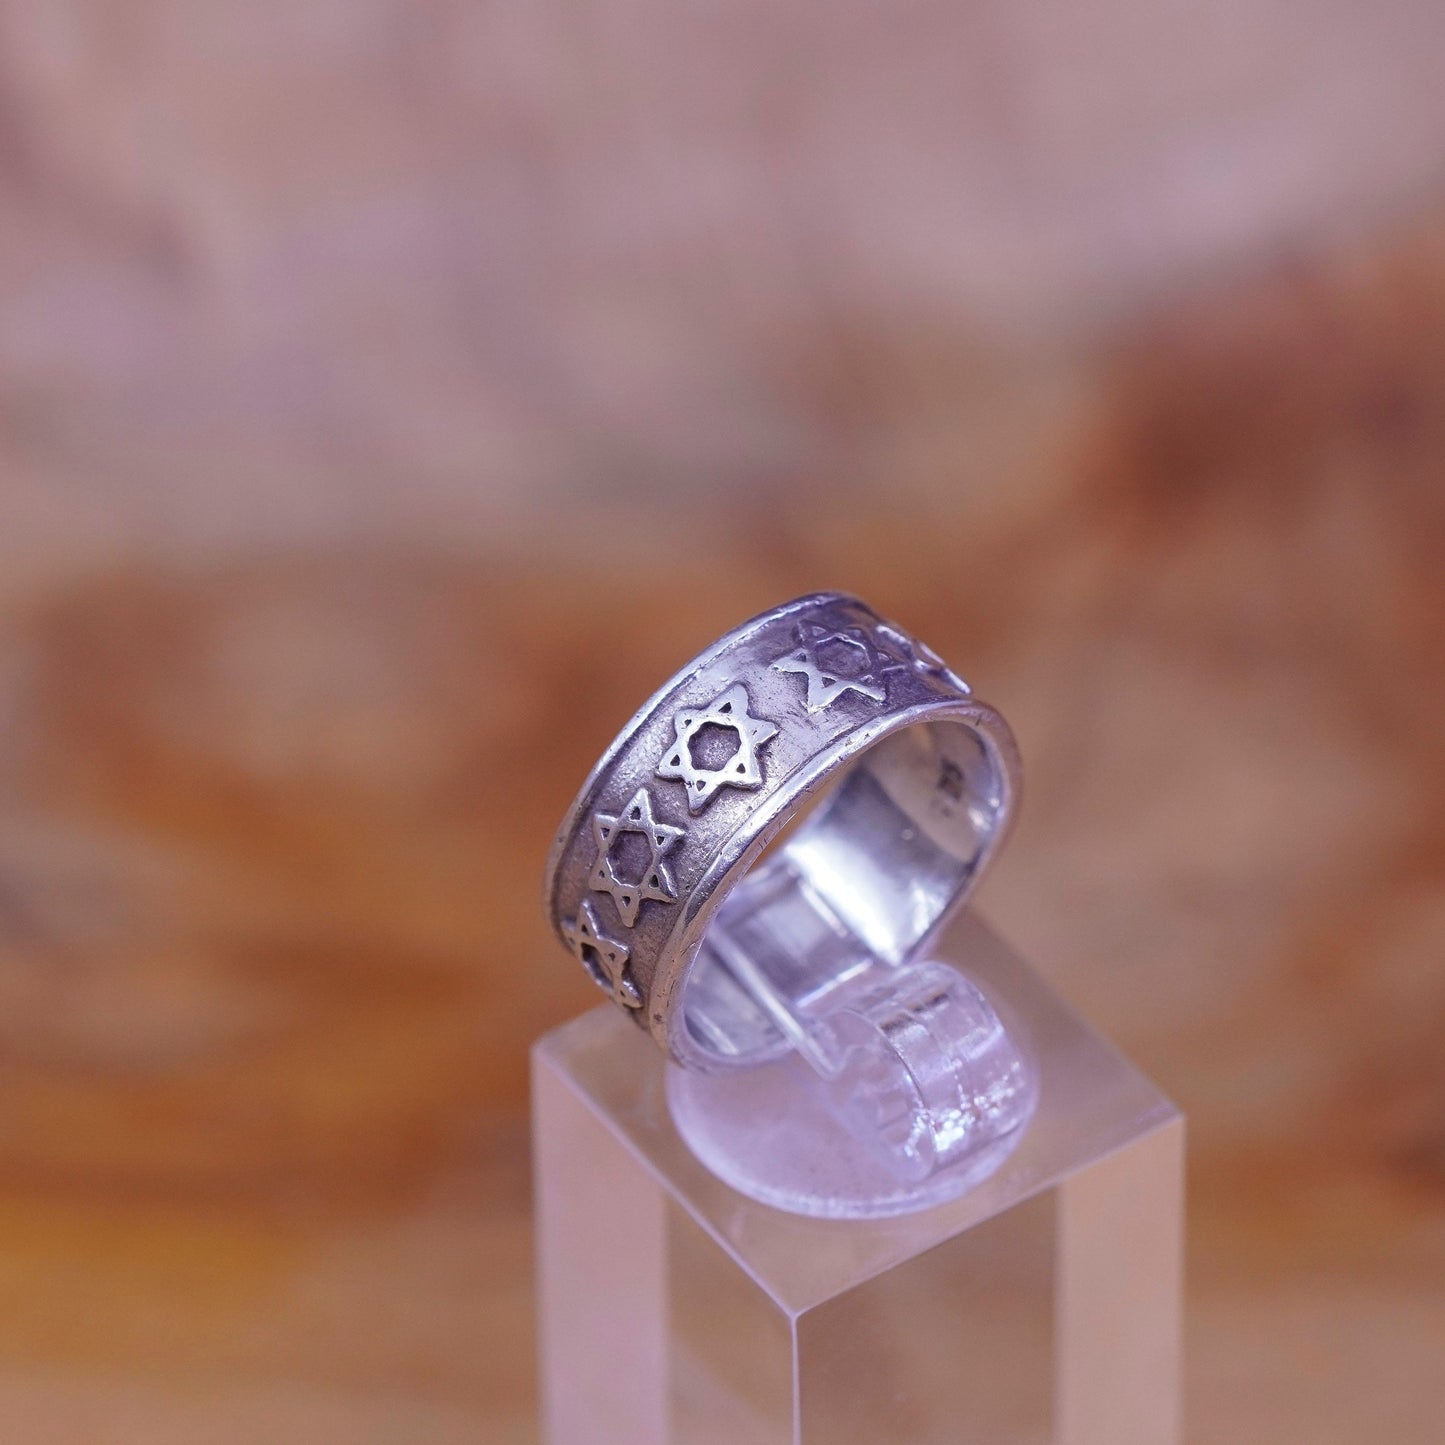 Size 4.75, vtg hopi Sterling silver handmade ring 925 relief star hexagram band